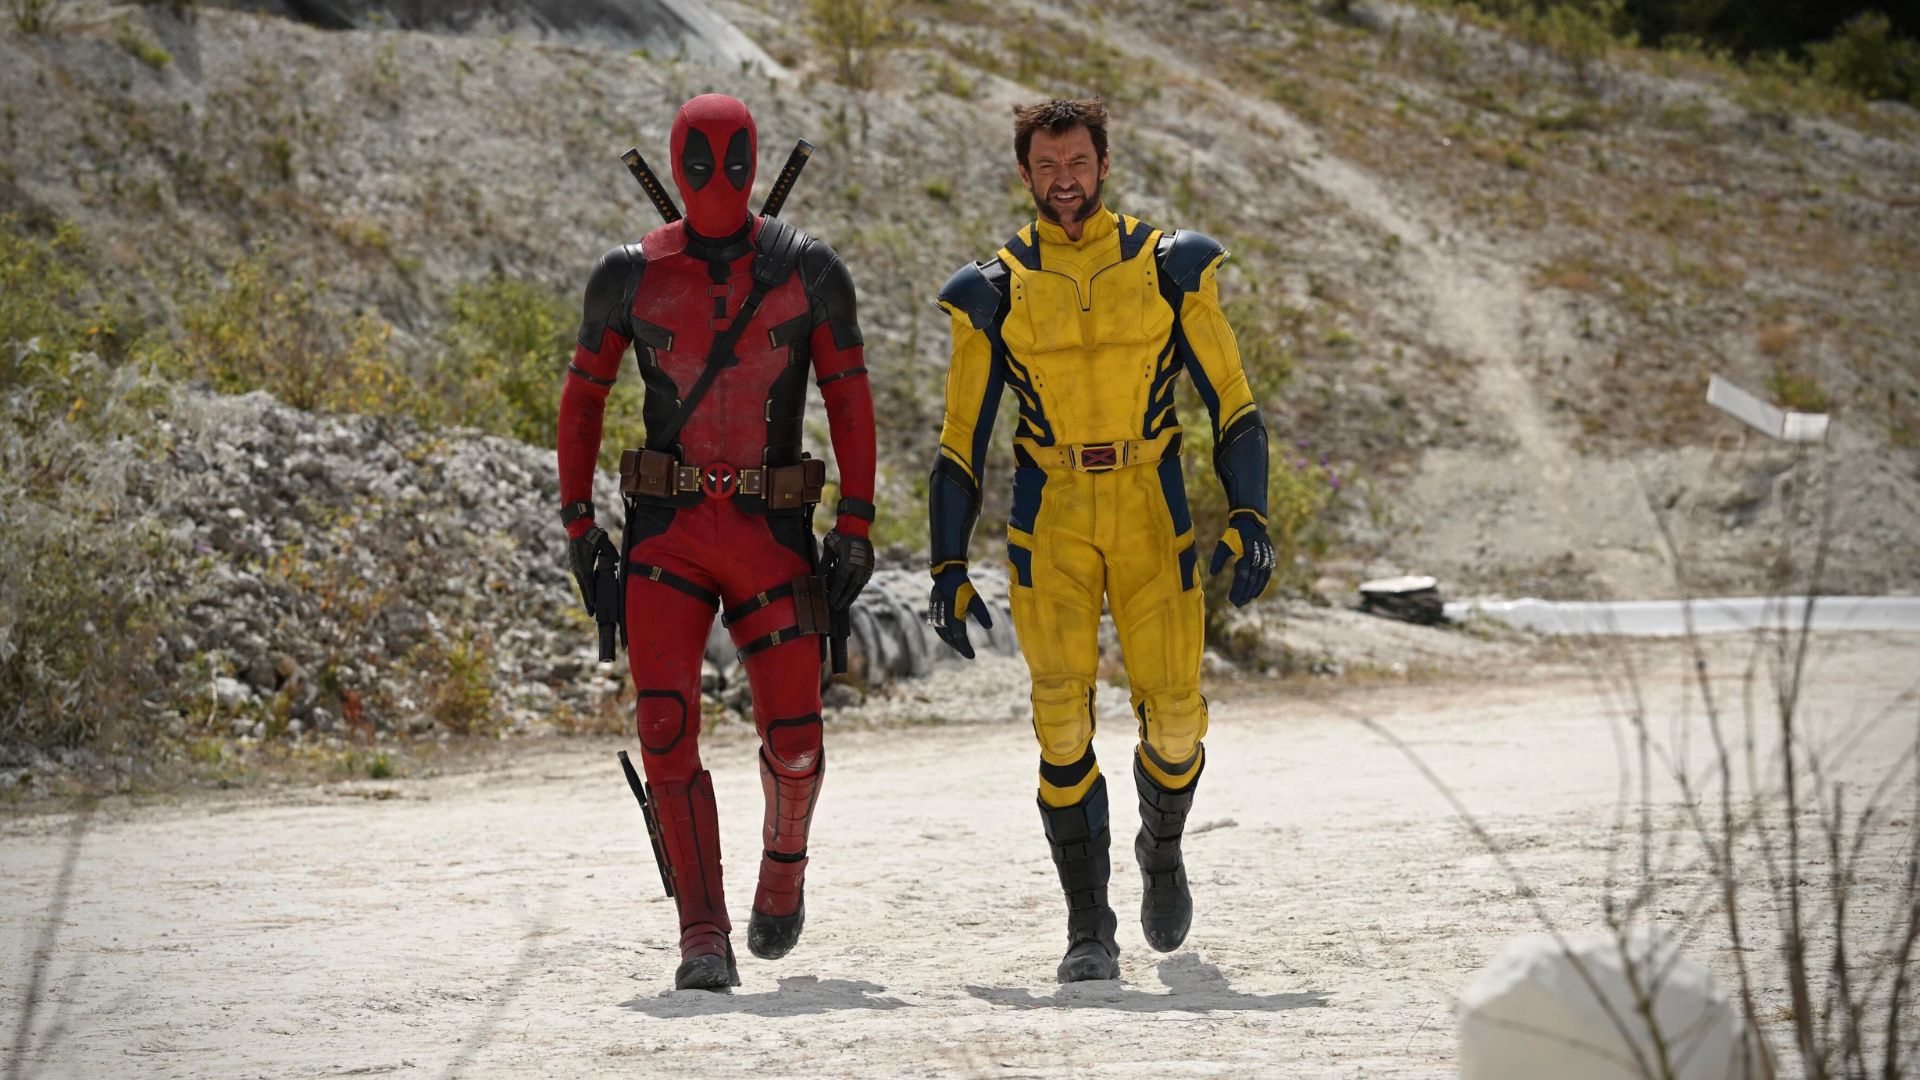 DO PIOR AO MELHOR FILME - Com 14 filmes lançados (contando com o especial  do Deadpool), há vários filmes da franquia X-Men avaliados…